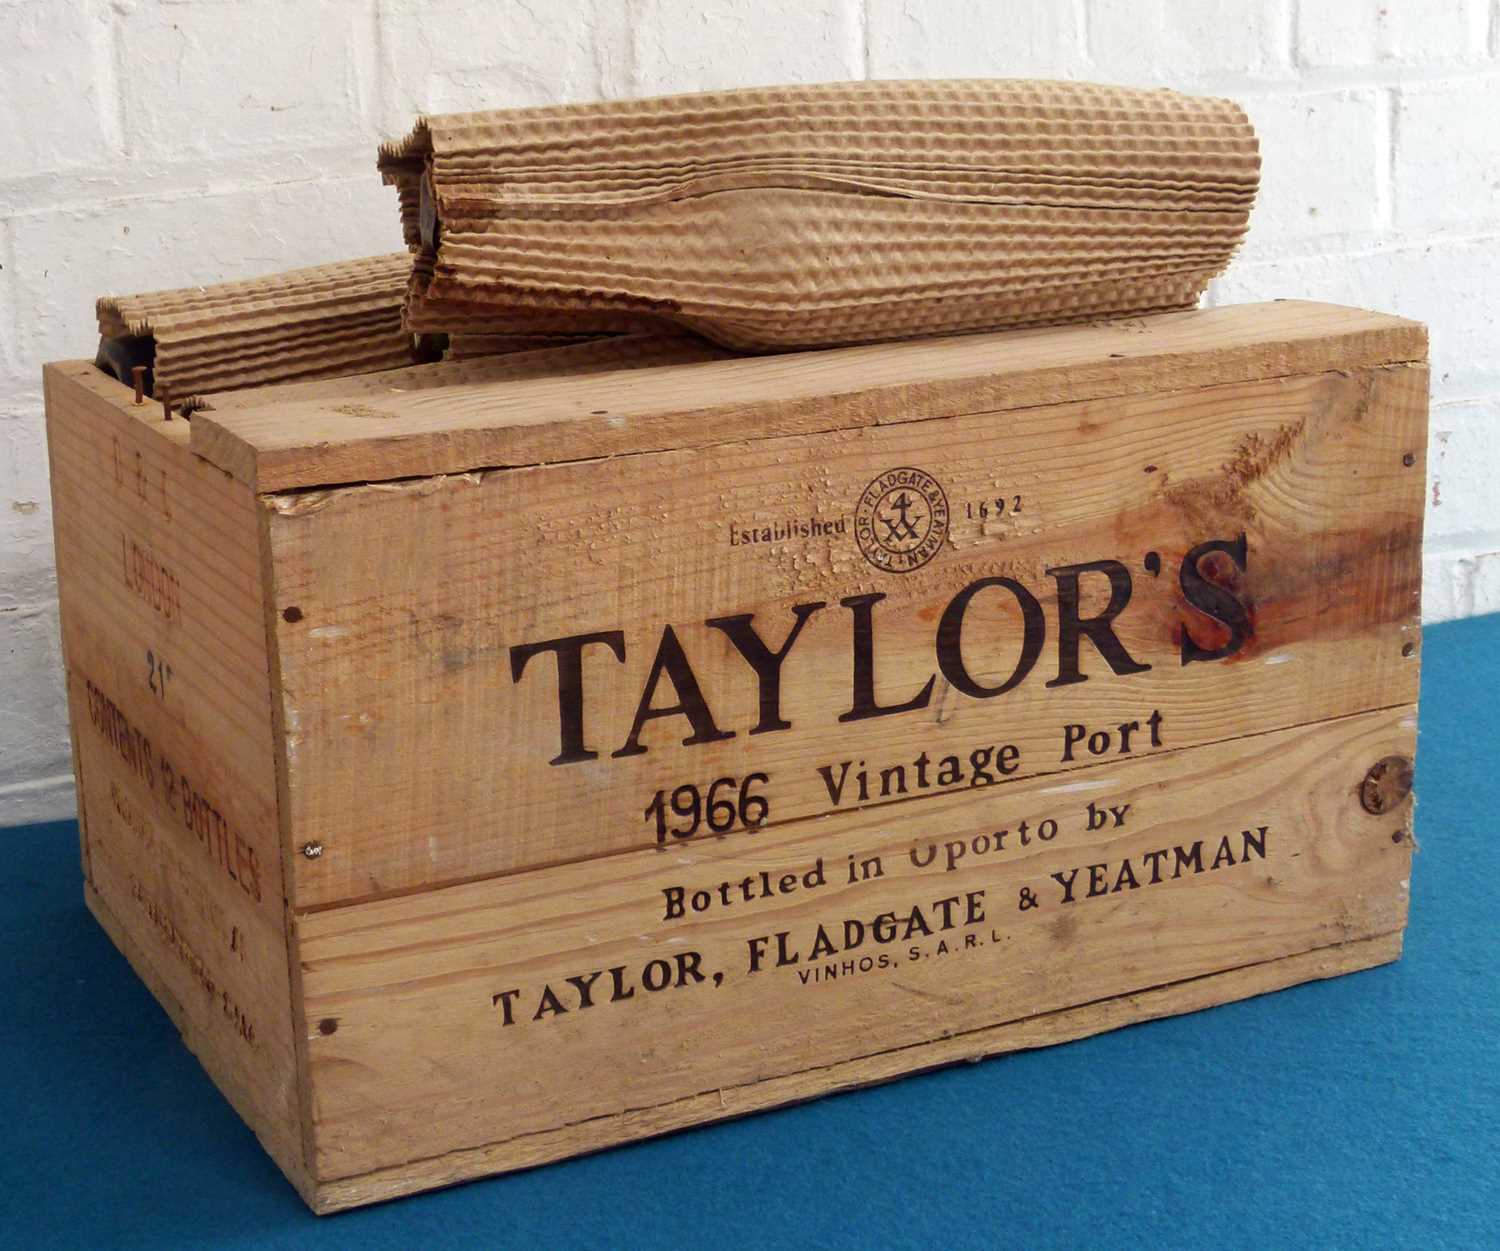 12 Bottles Taylors Vintage Port 1966